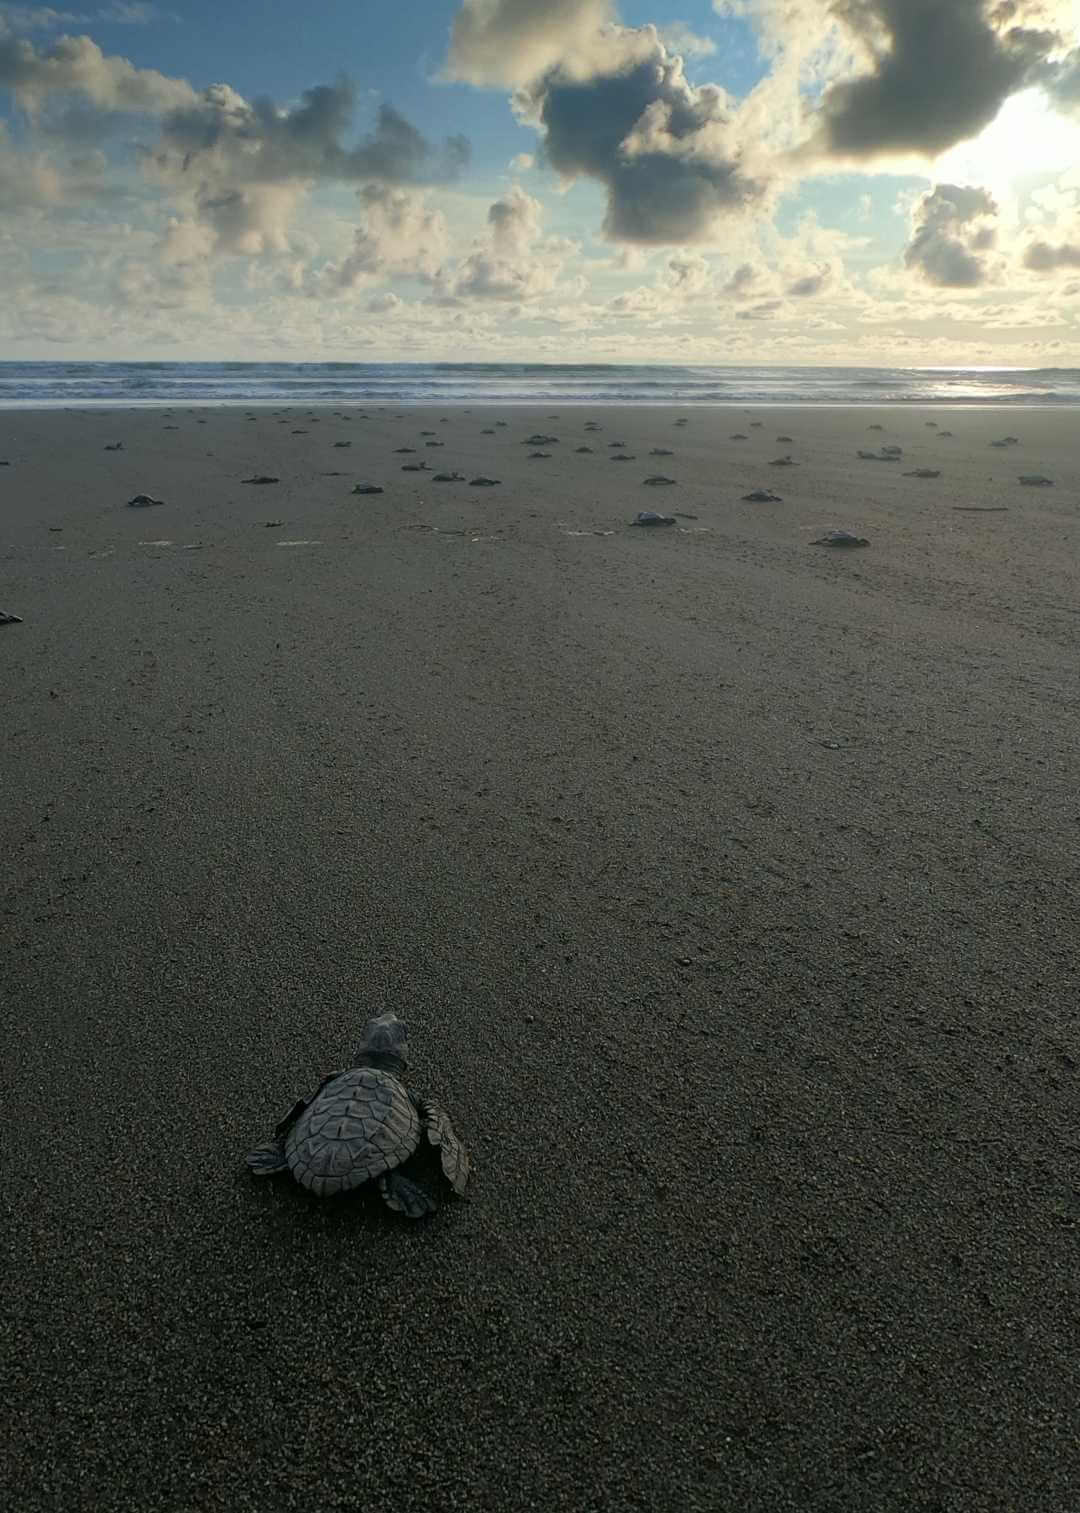 Liberación de tortugas marinas en las playas de Pacífico colombiano